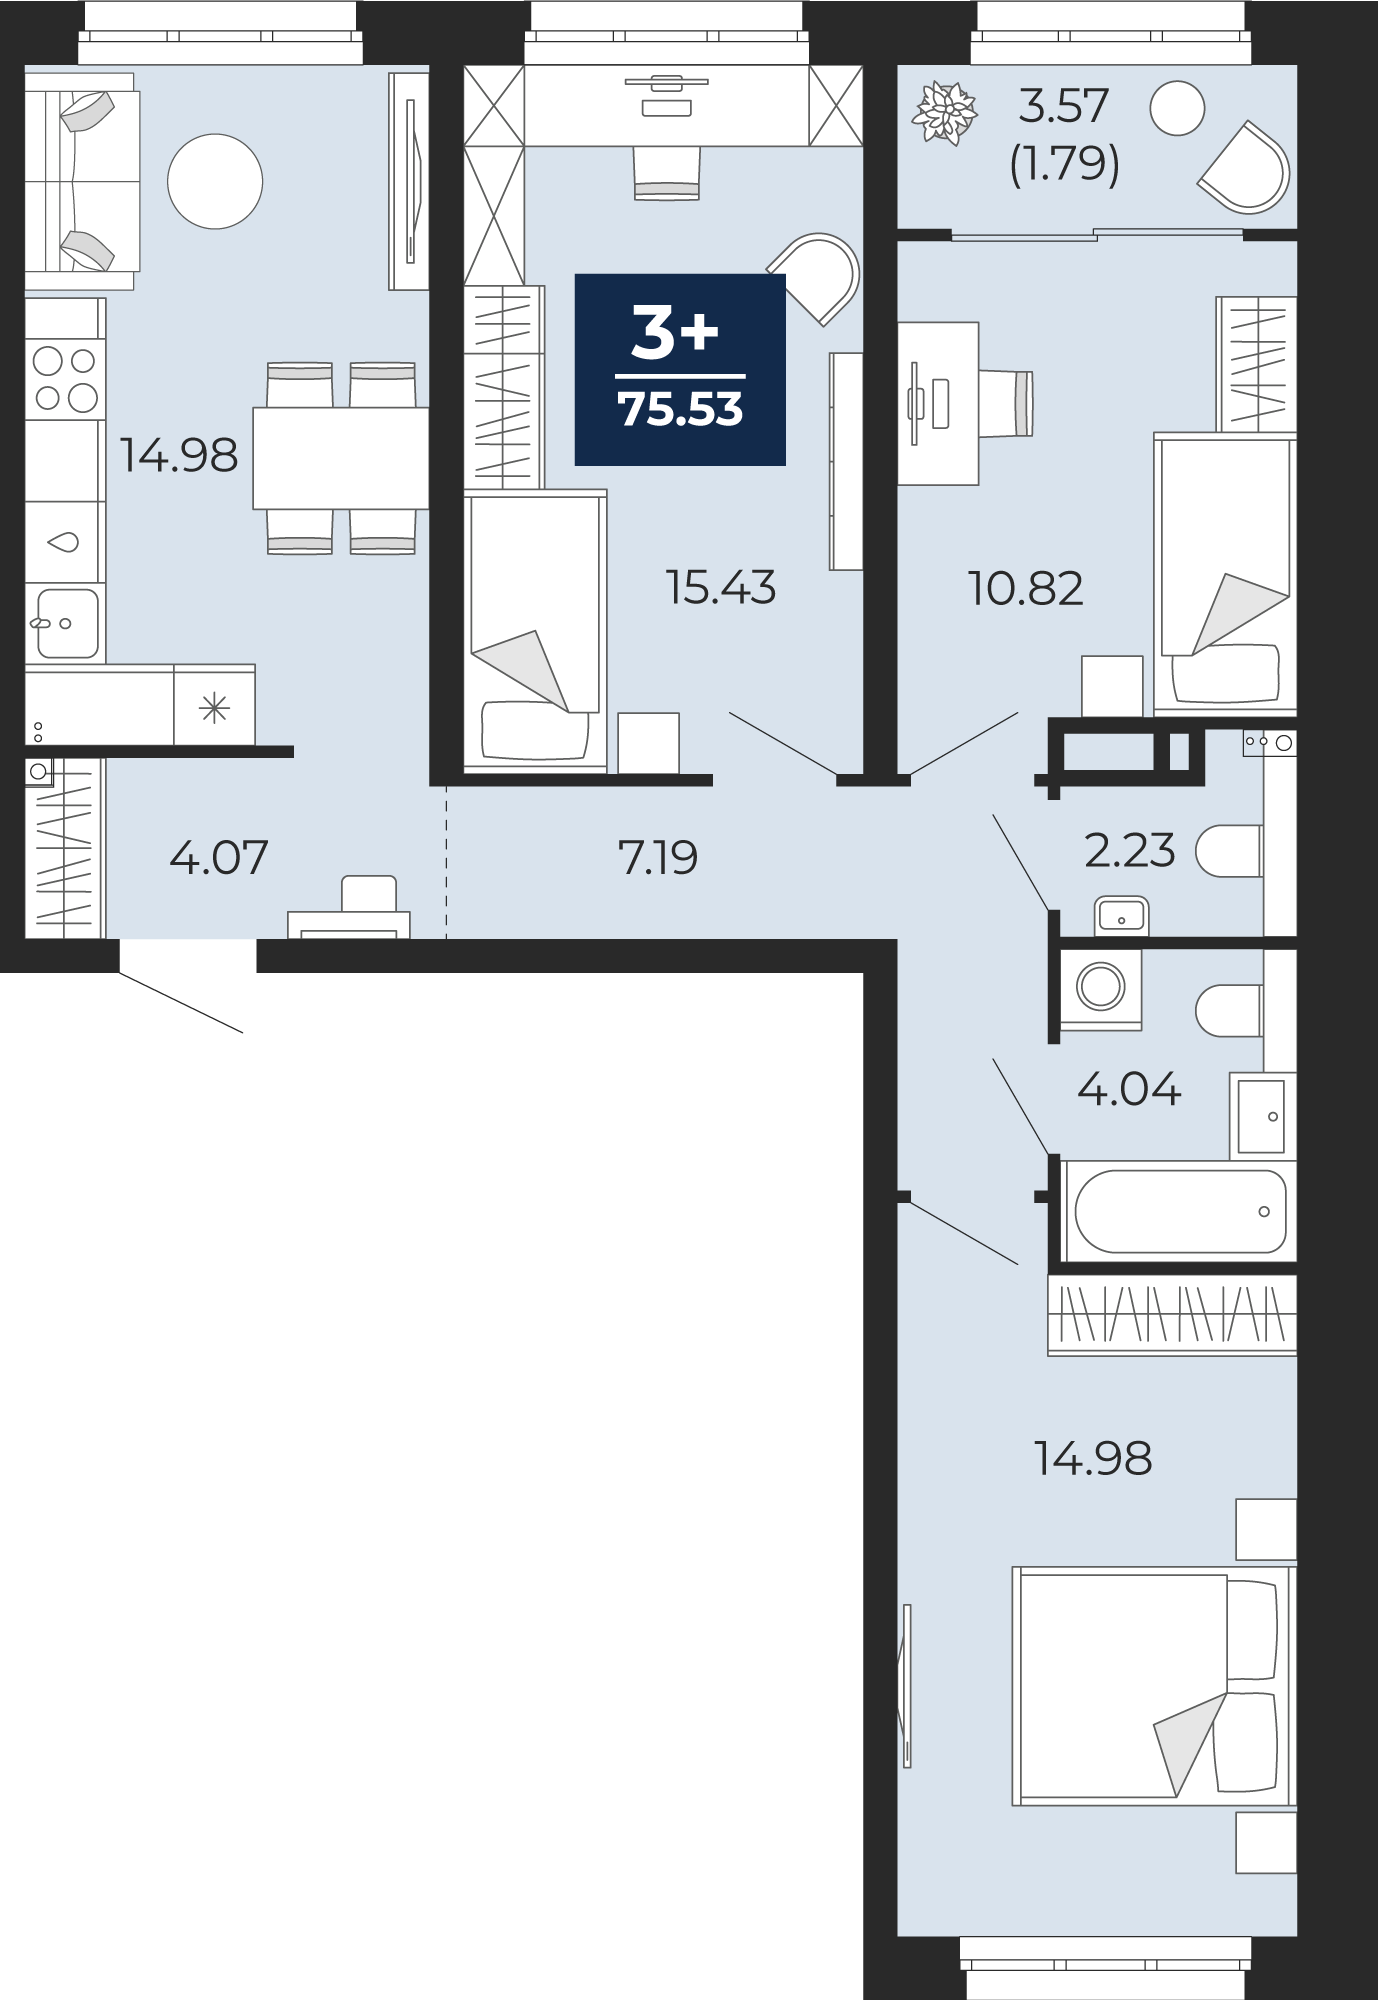 Квартира № 23, 3-комнатная, 75.53 кв. м, 6 этаж